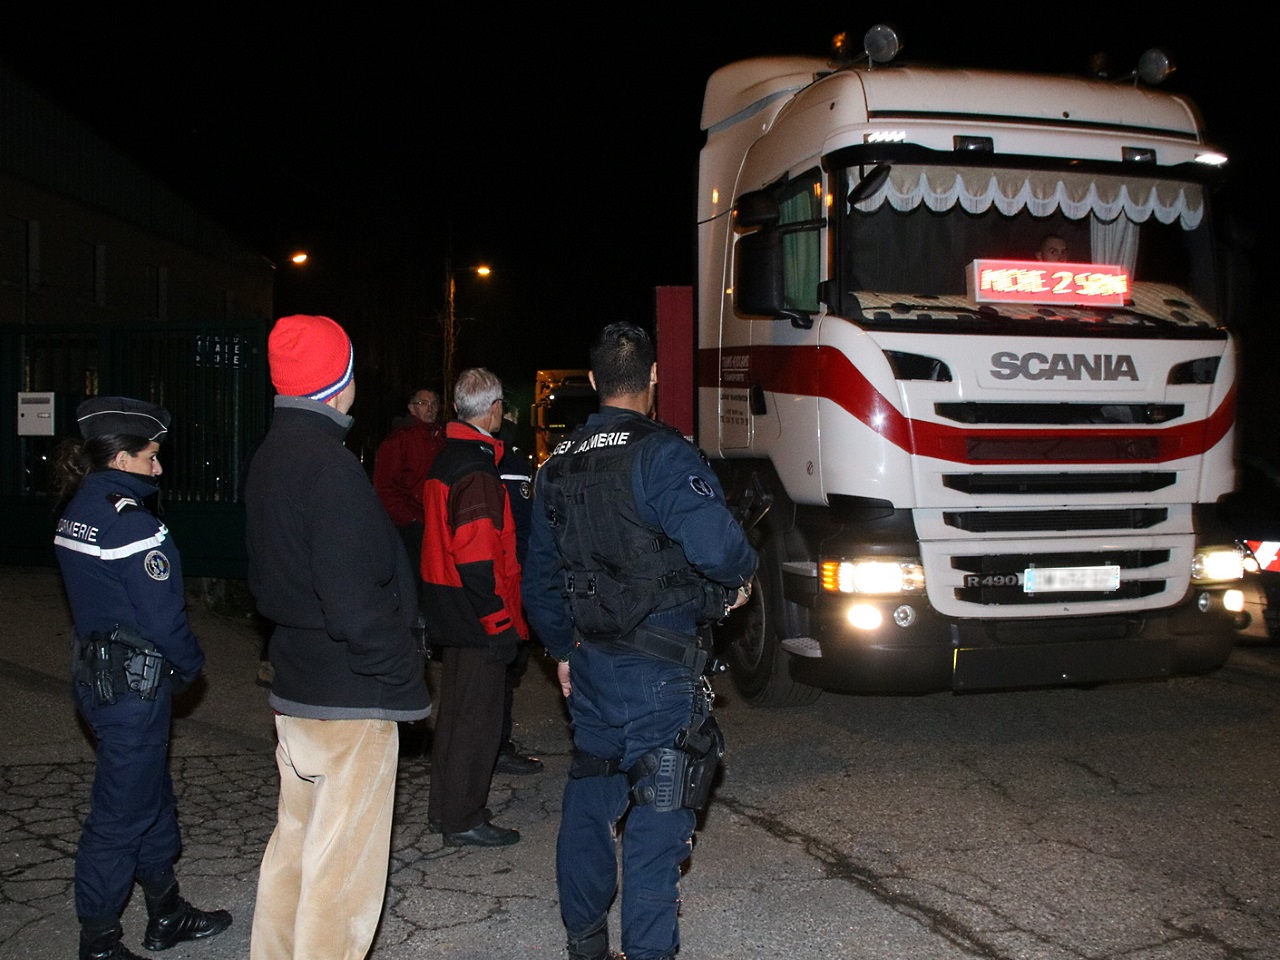 Les opposants empêchés de barrer la route à la sortie des camions - LyonMag